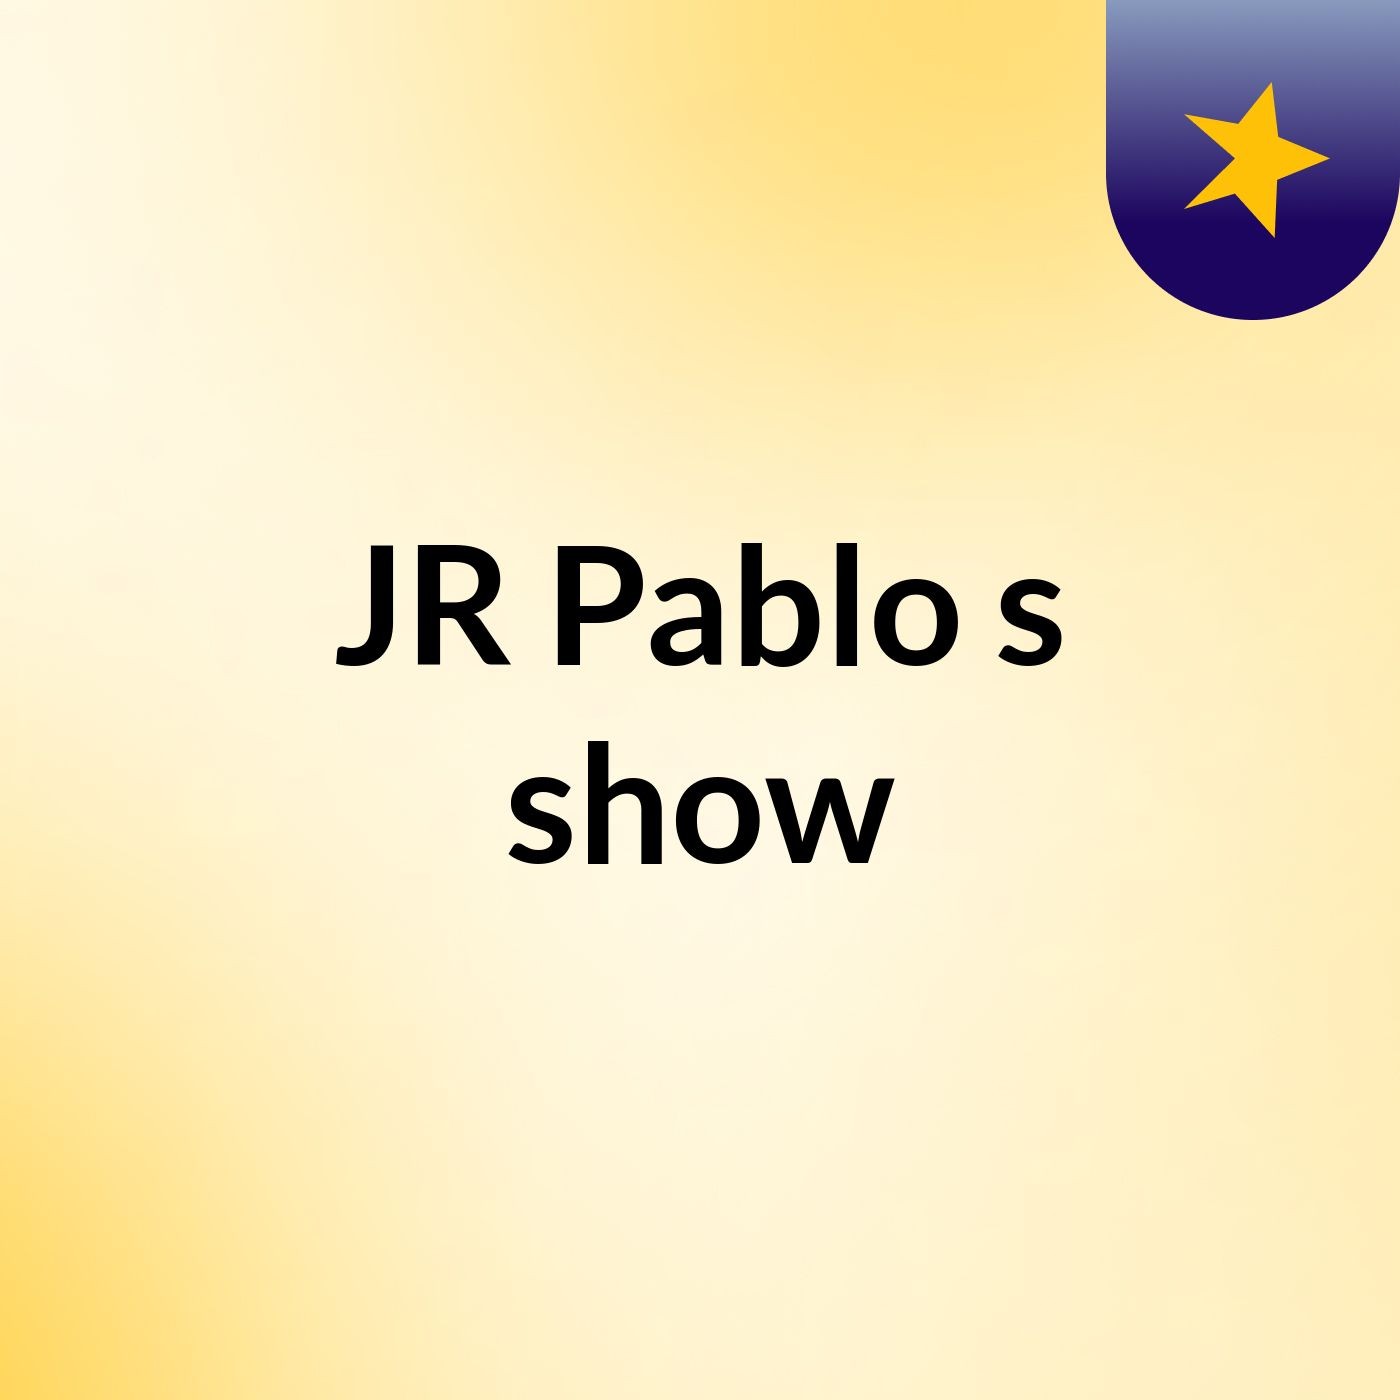 JR Pablo's show